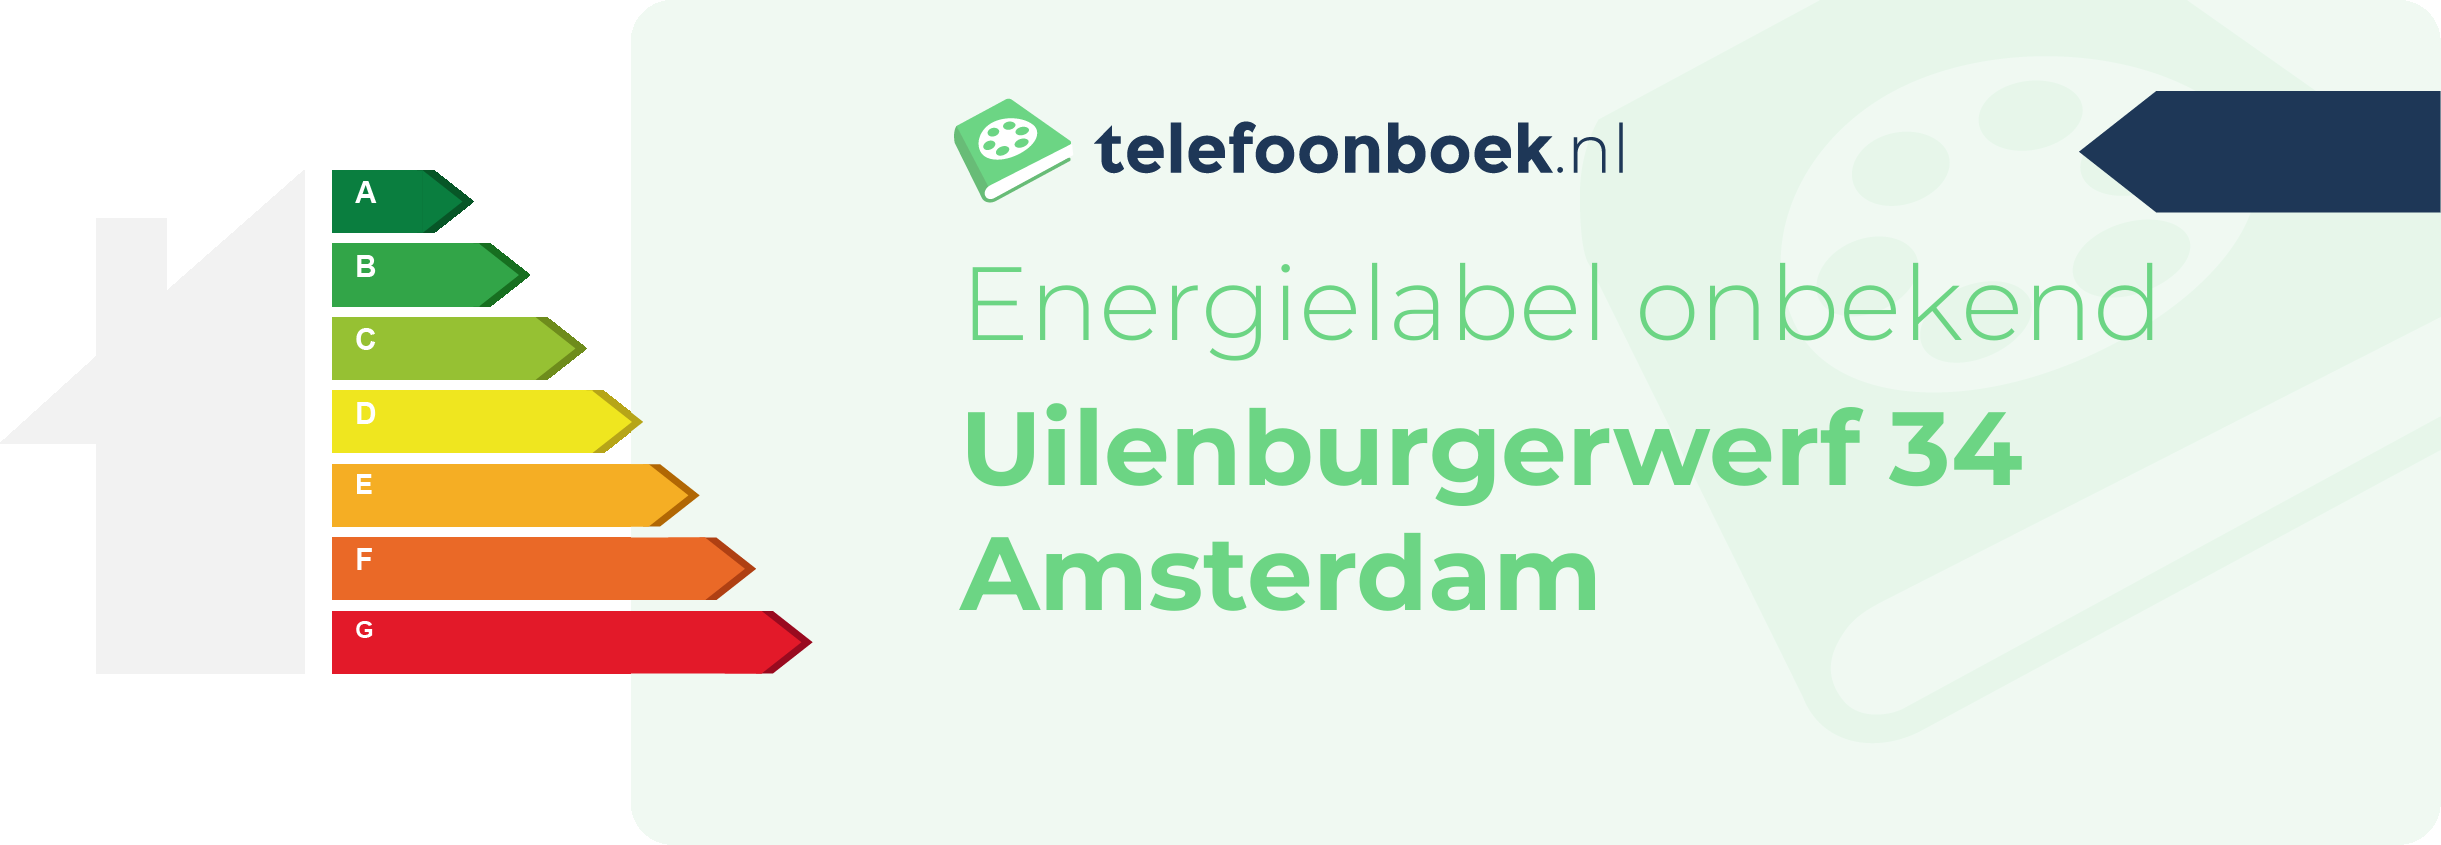 Energielabel Uilenburgerwerf 34 Amsterdam